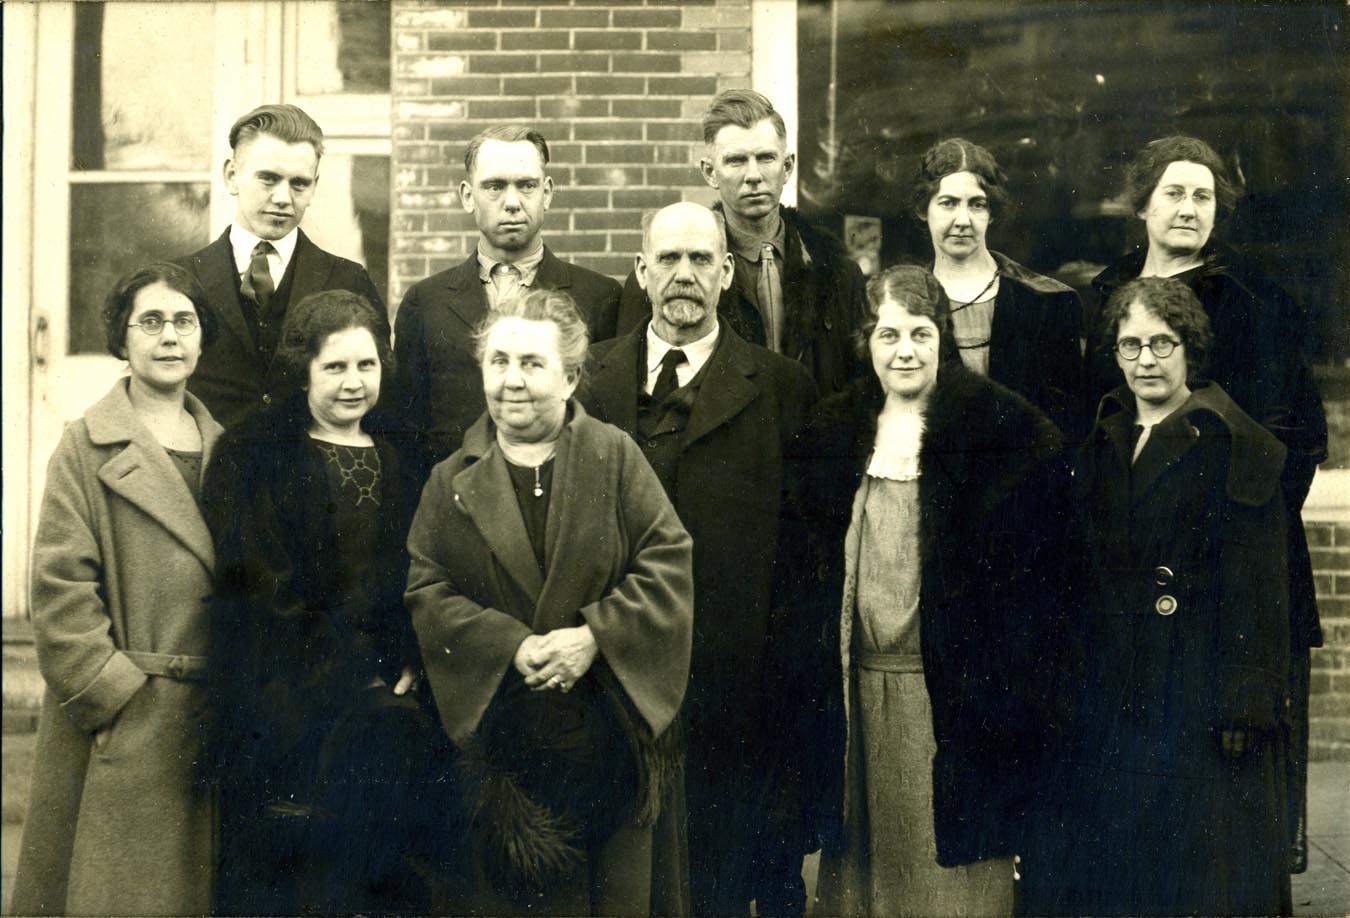 Lyon immediate family (March 1927)